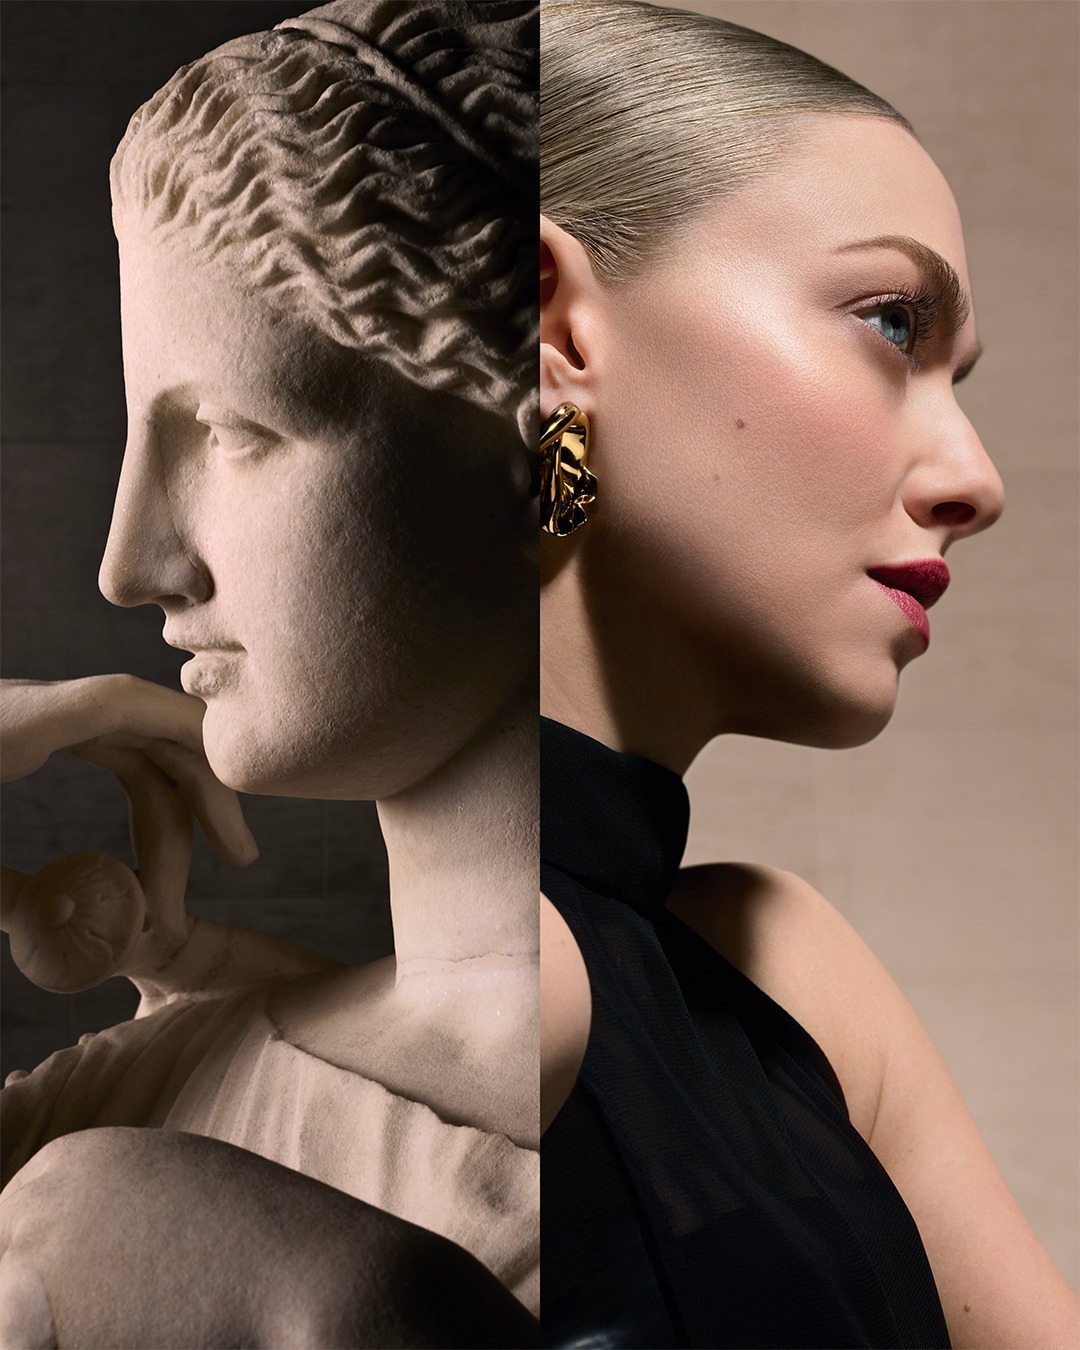 Lancôme x Louvre: Η νέα συνεργασία ενθουσιάζει τους λάτρεις της ομορφιάς και της τέχνης